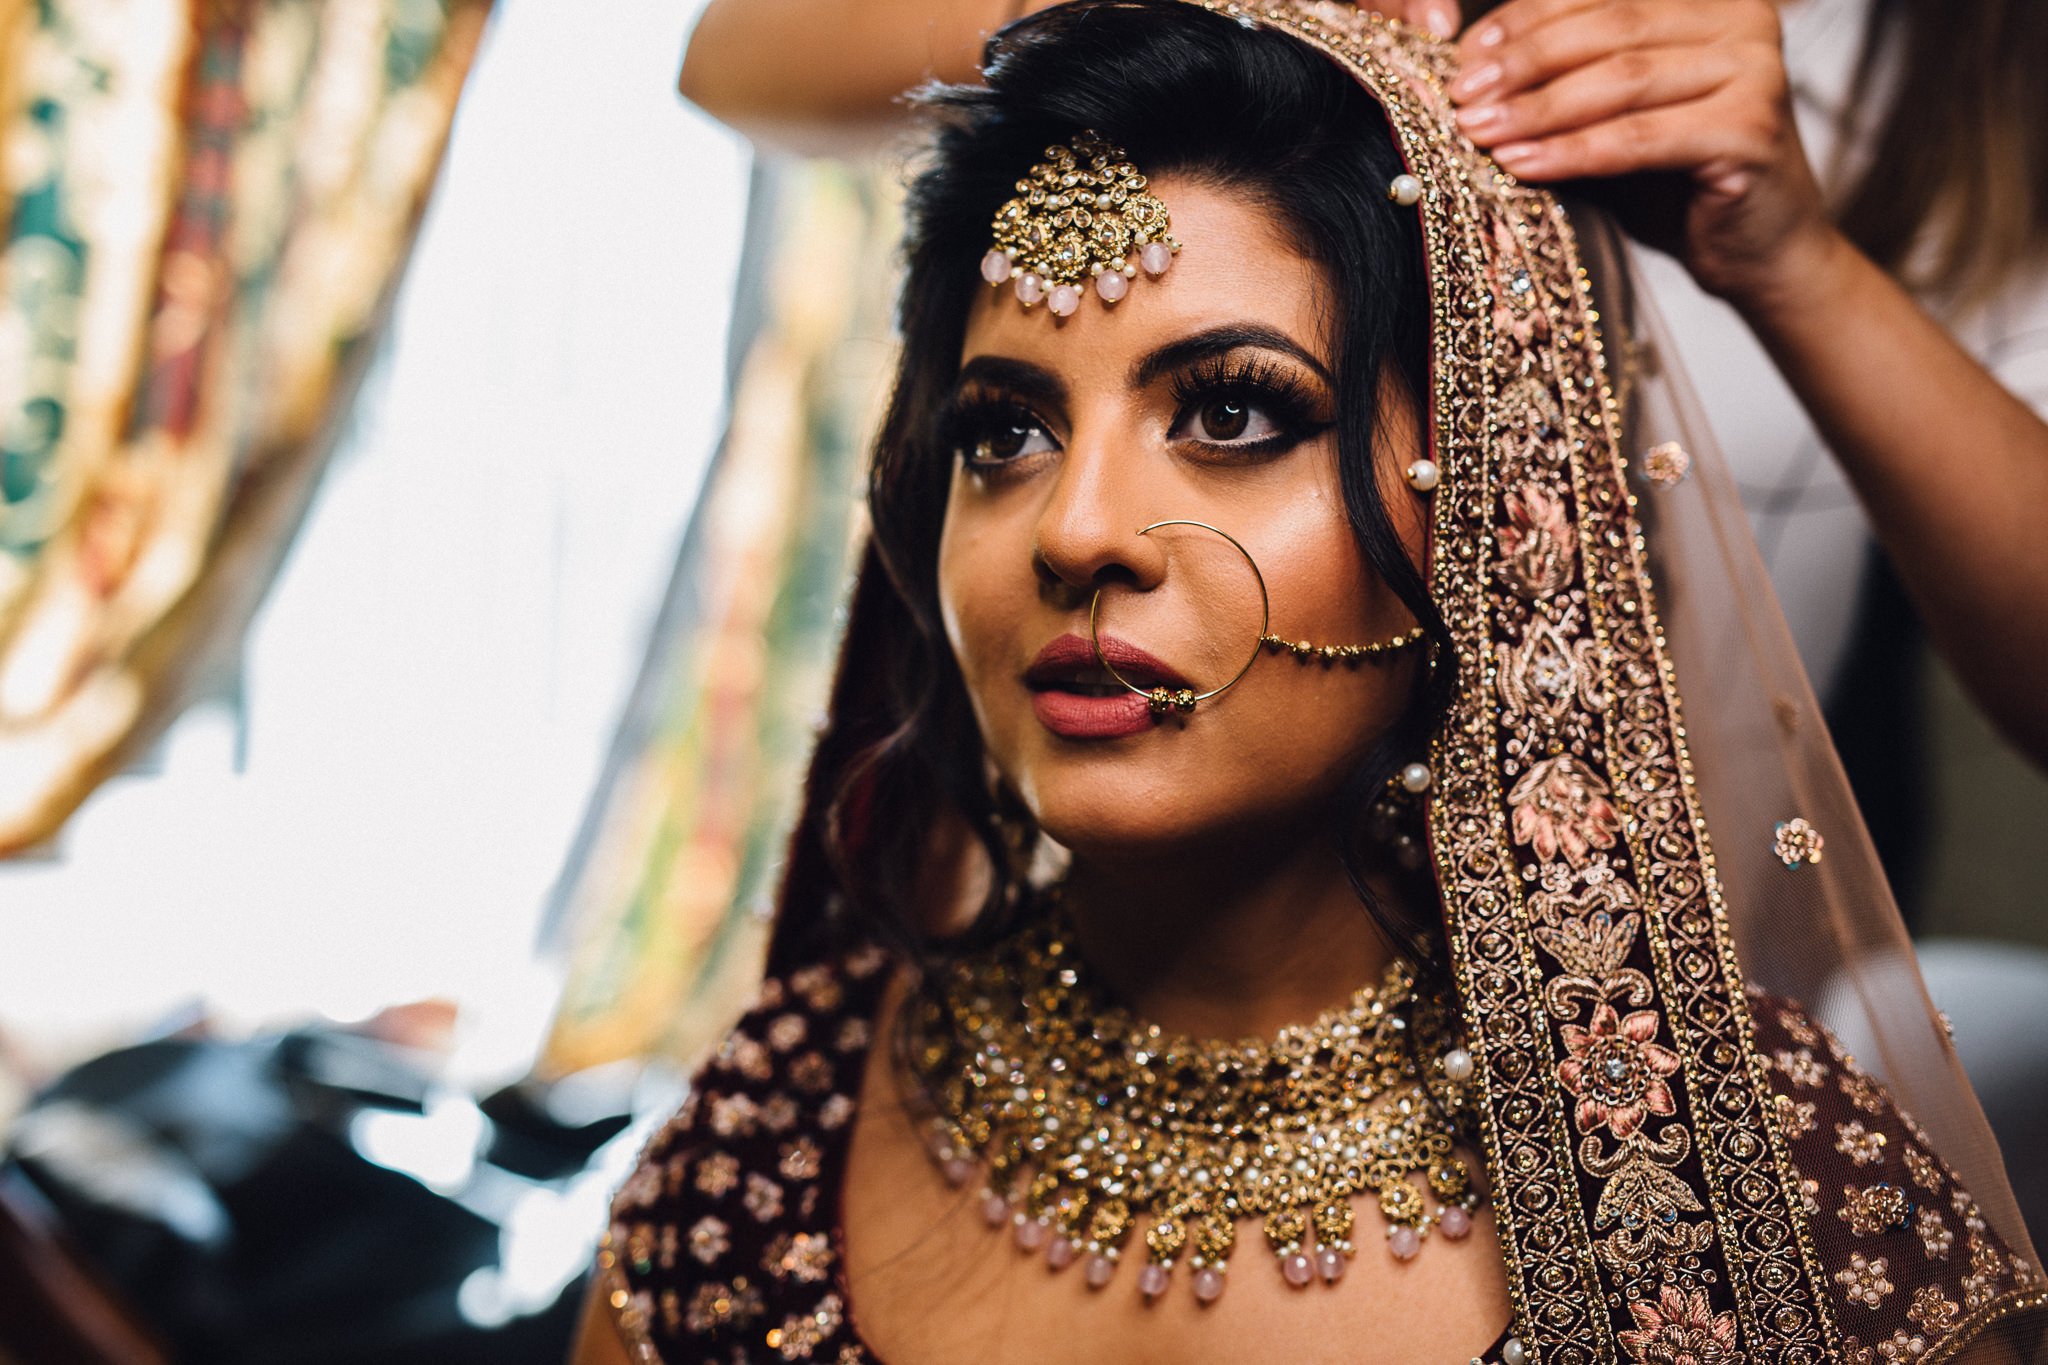  Bride in her Sikh wedding attire  